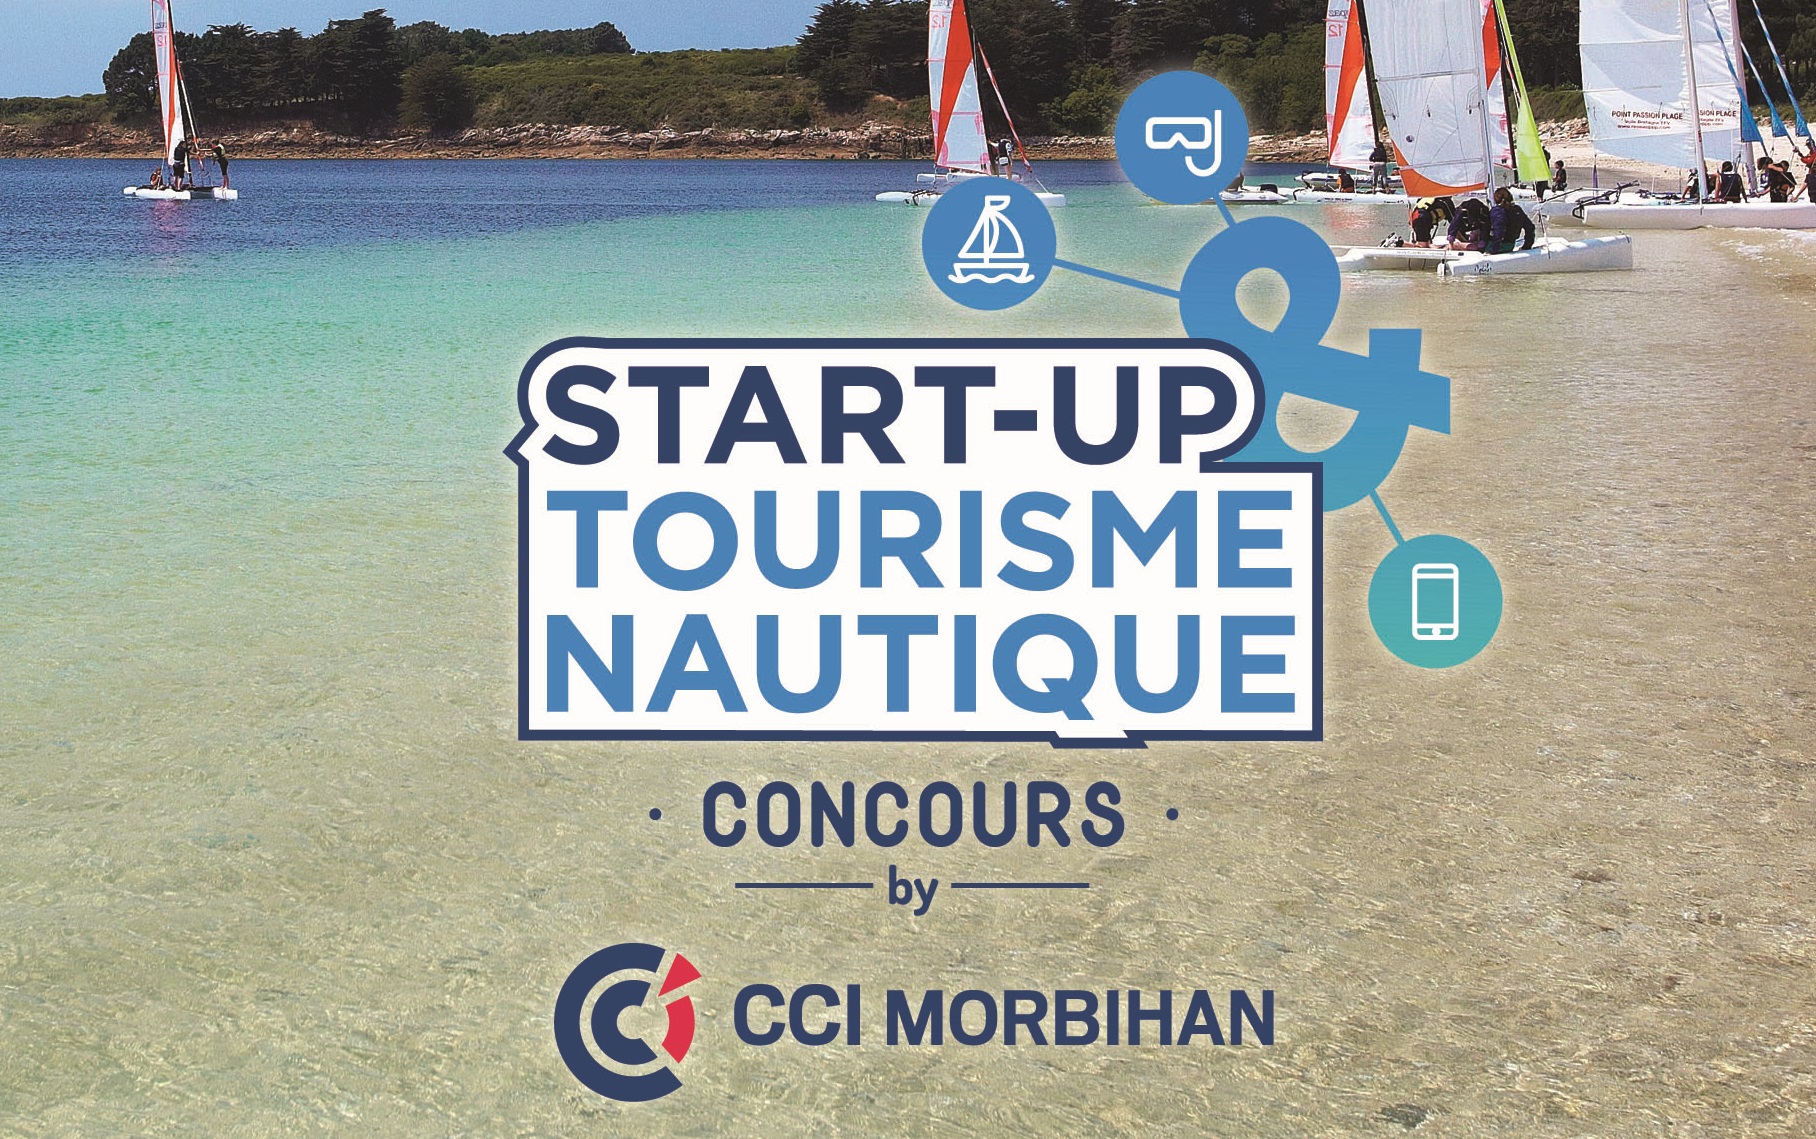 La CCI du Morbihan lance un concours « startup et tourisme nautique »